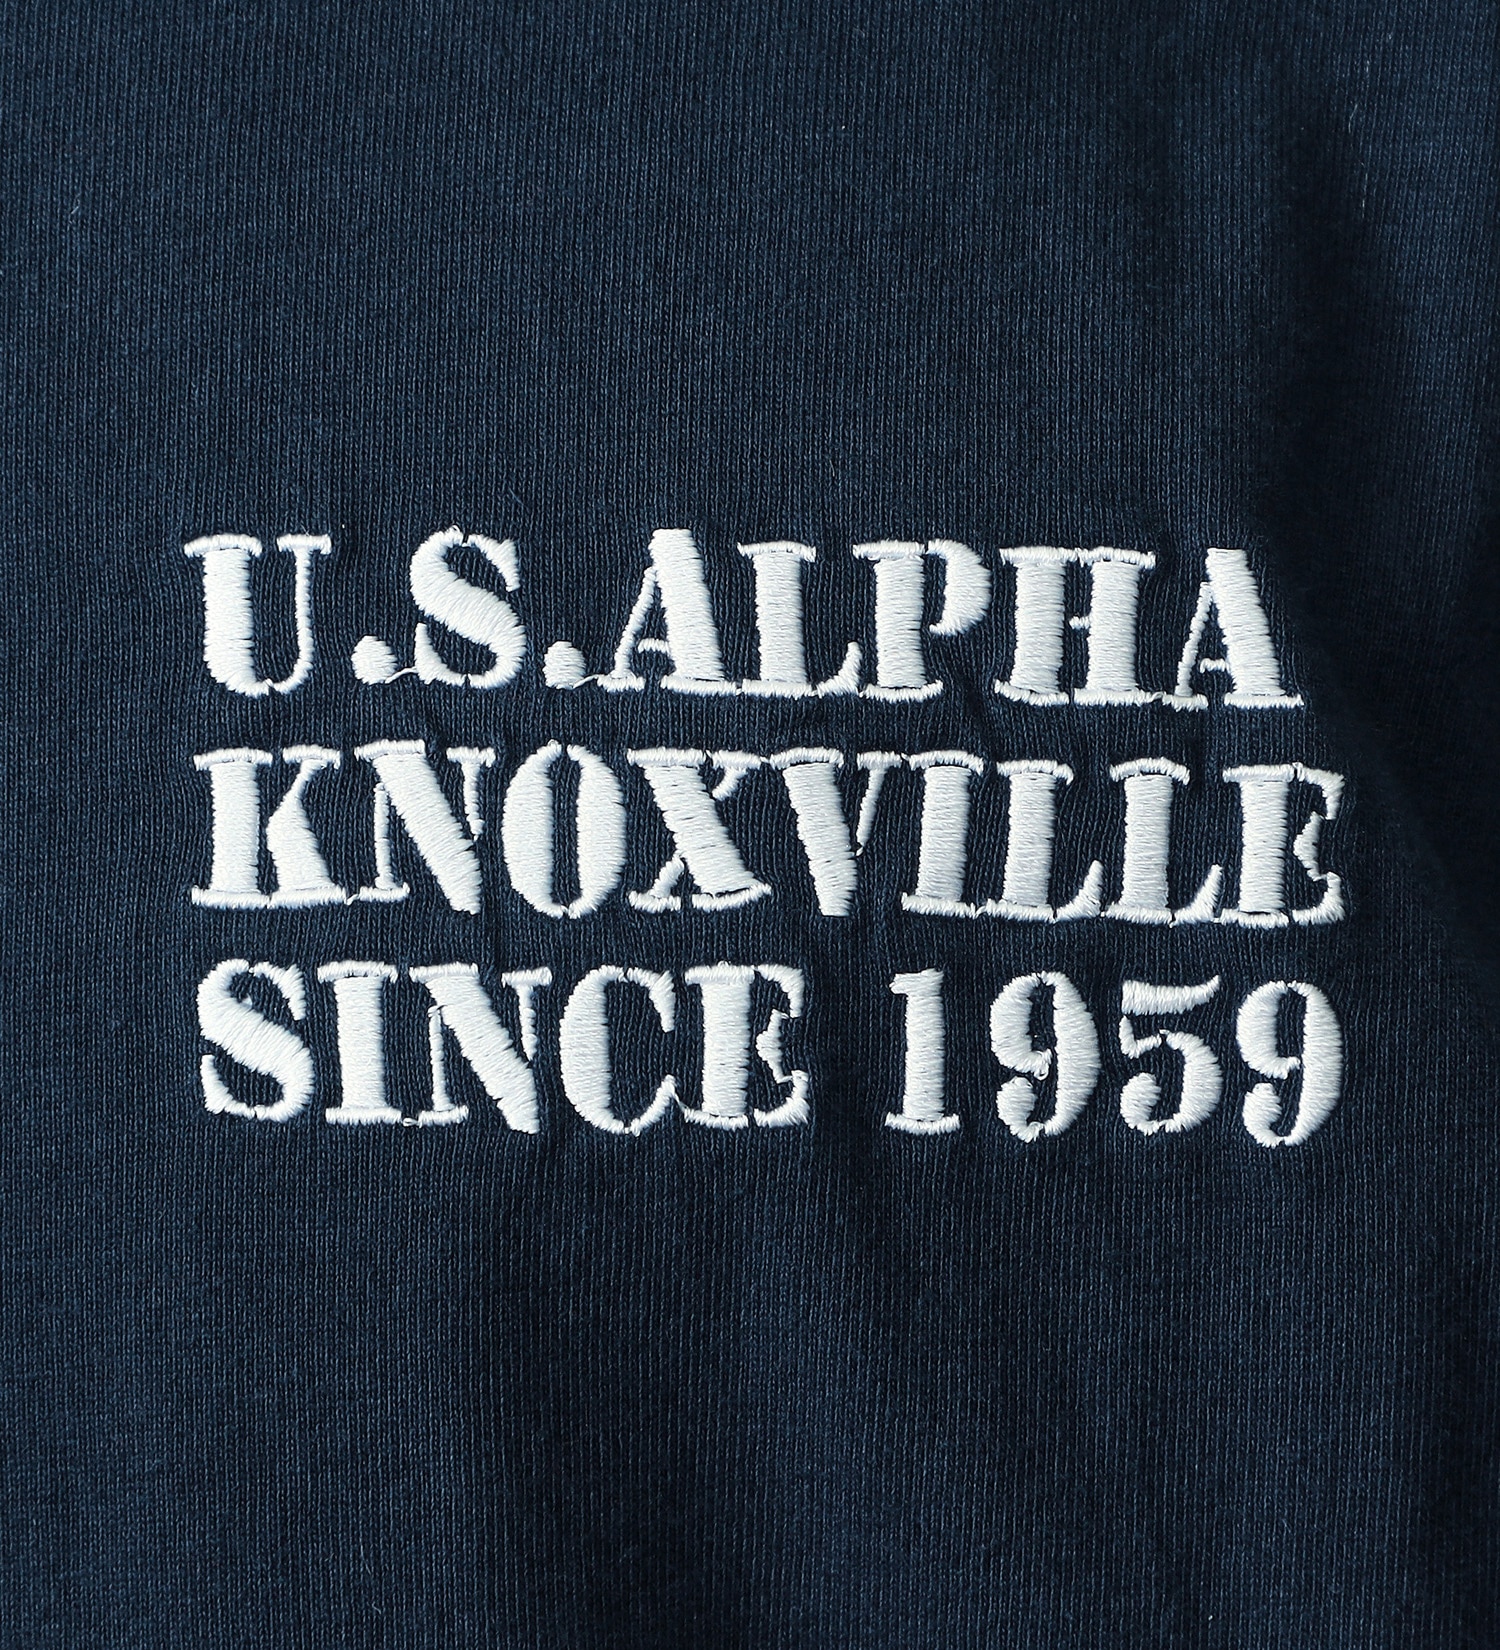 ALPHA(アルファ)の【おまとめ割対象】フライトパッチ Tシャツ 半袖|トップス/Tシャツ/カットソー/メンズ|ネイビー